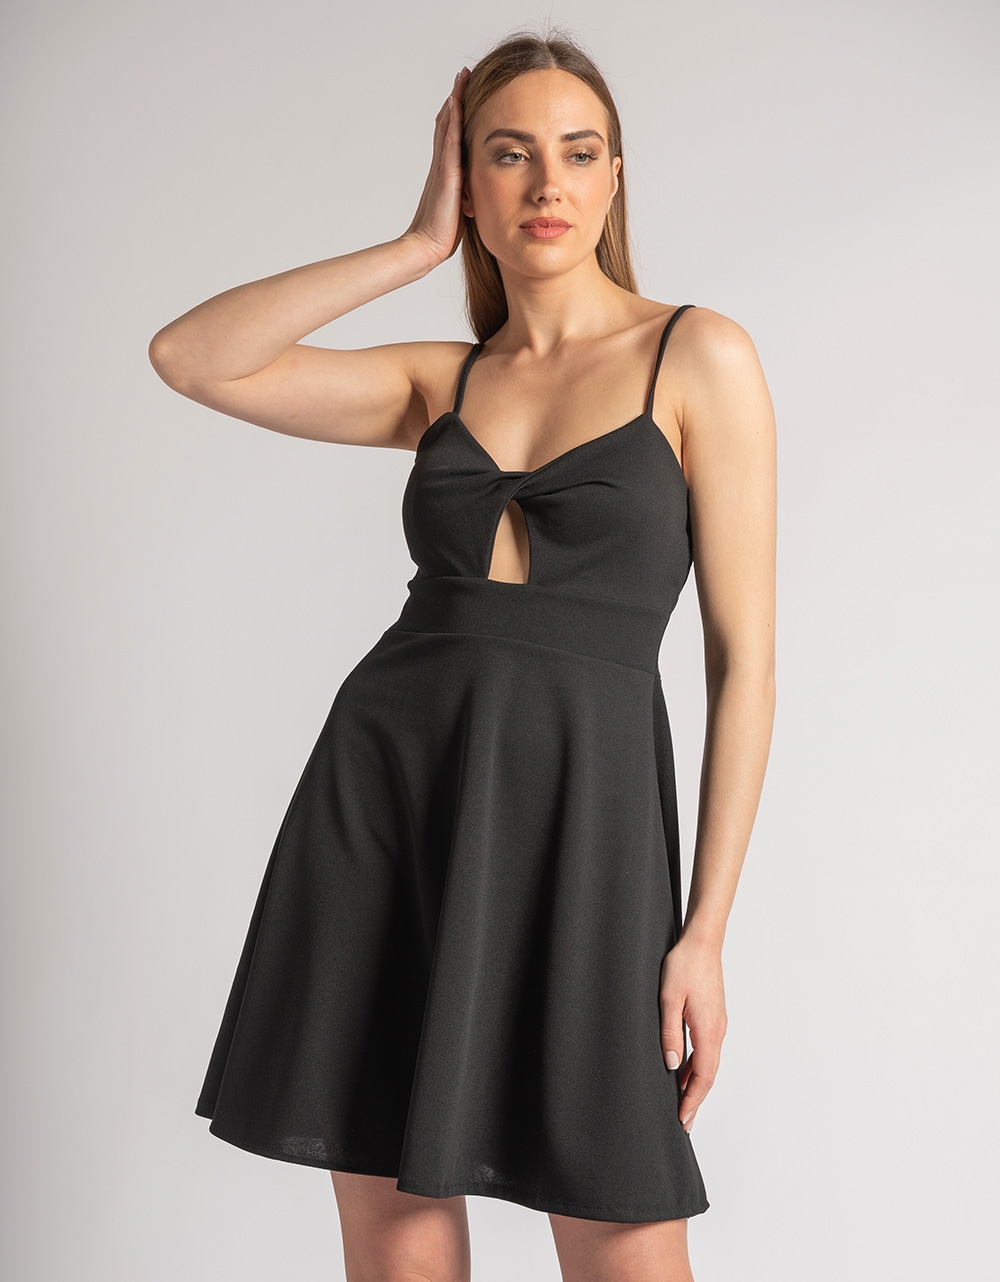 Εικόνα από Μονόχρωμο μίνι φόρεμα με άνοιγμα στο στήθος Μαύρο